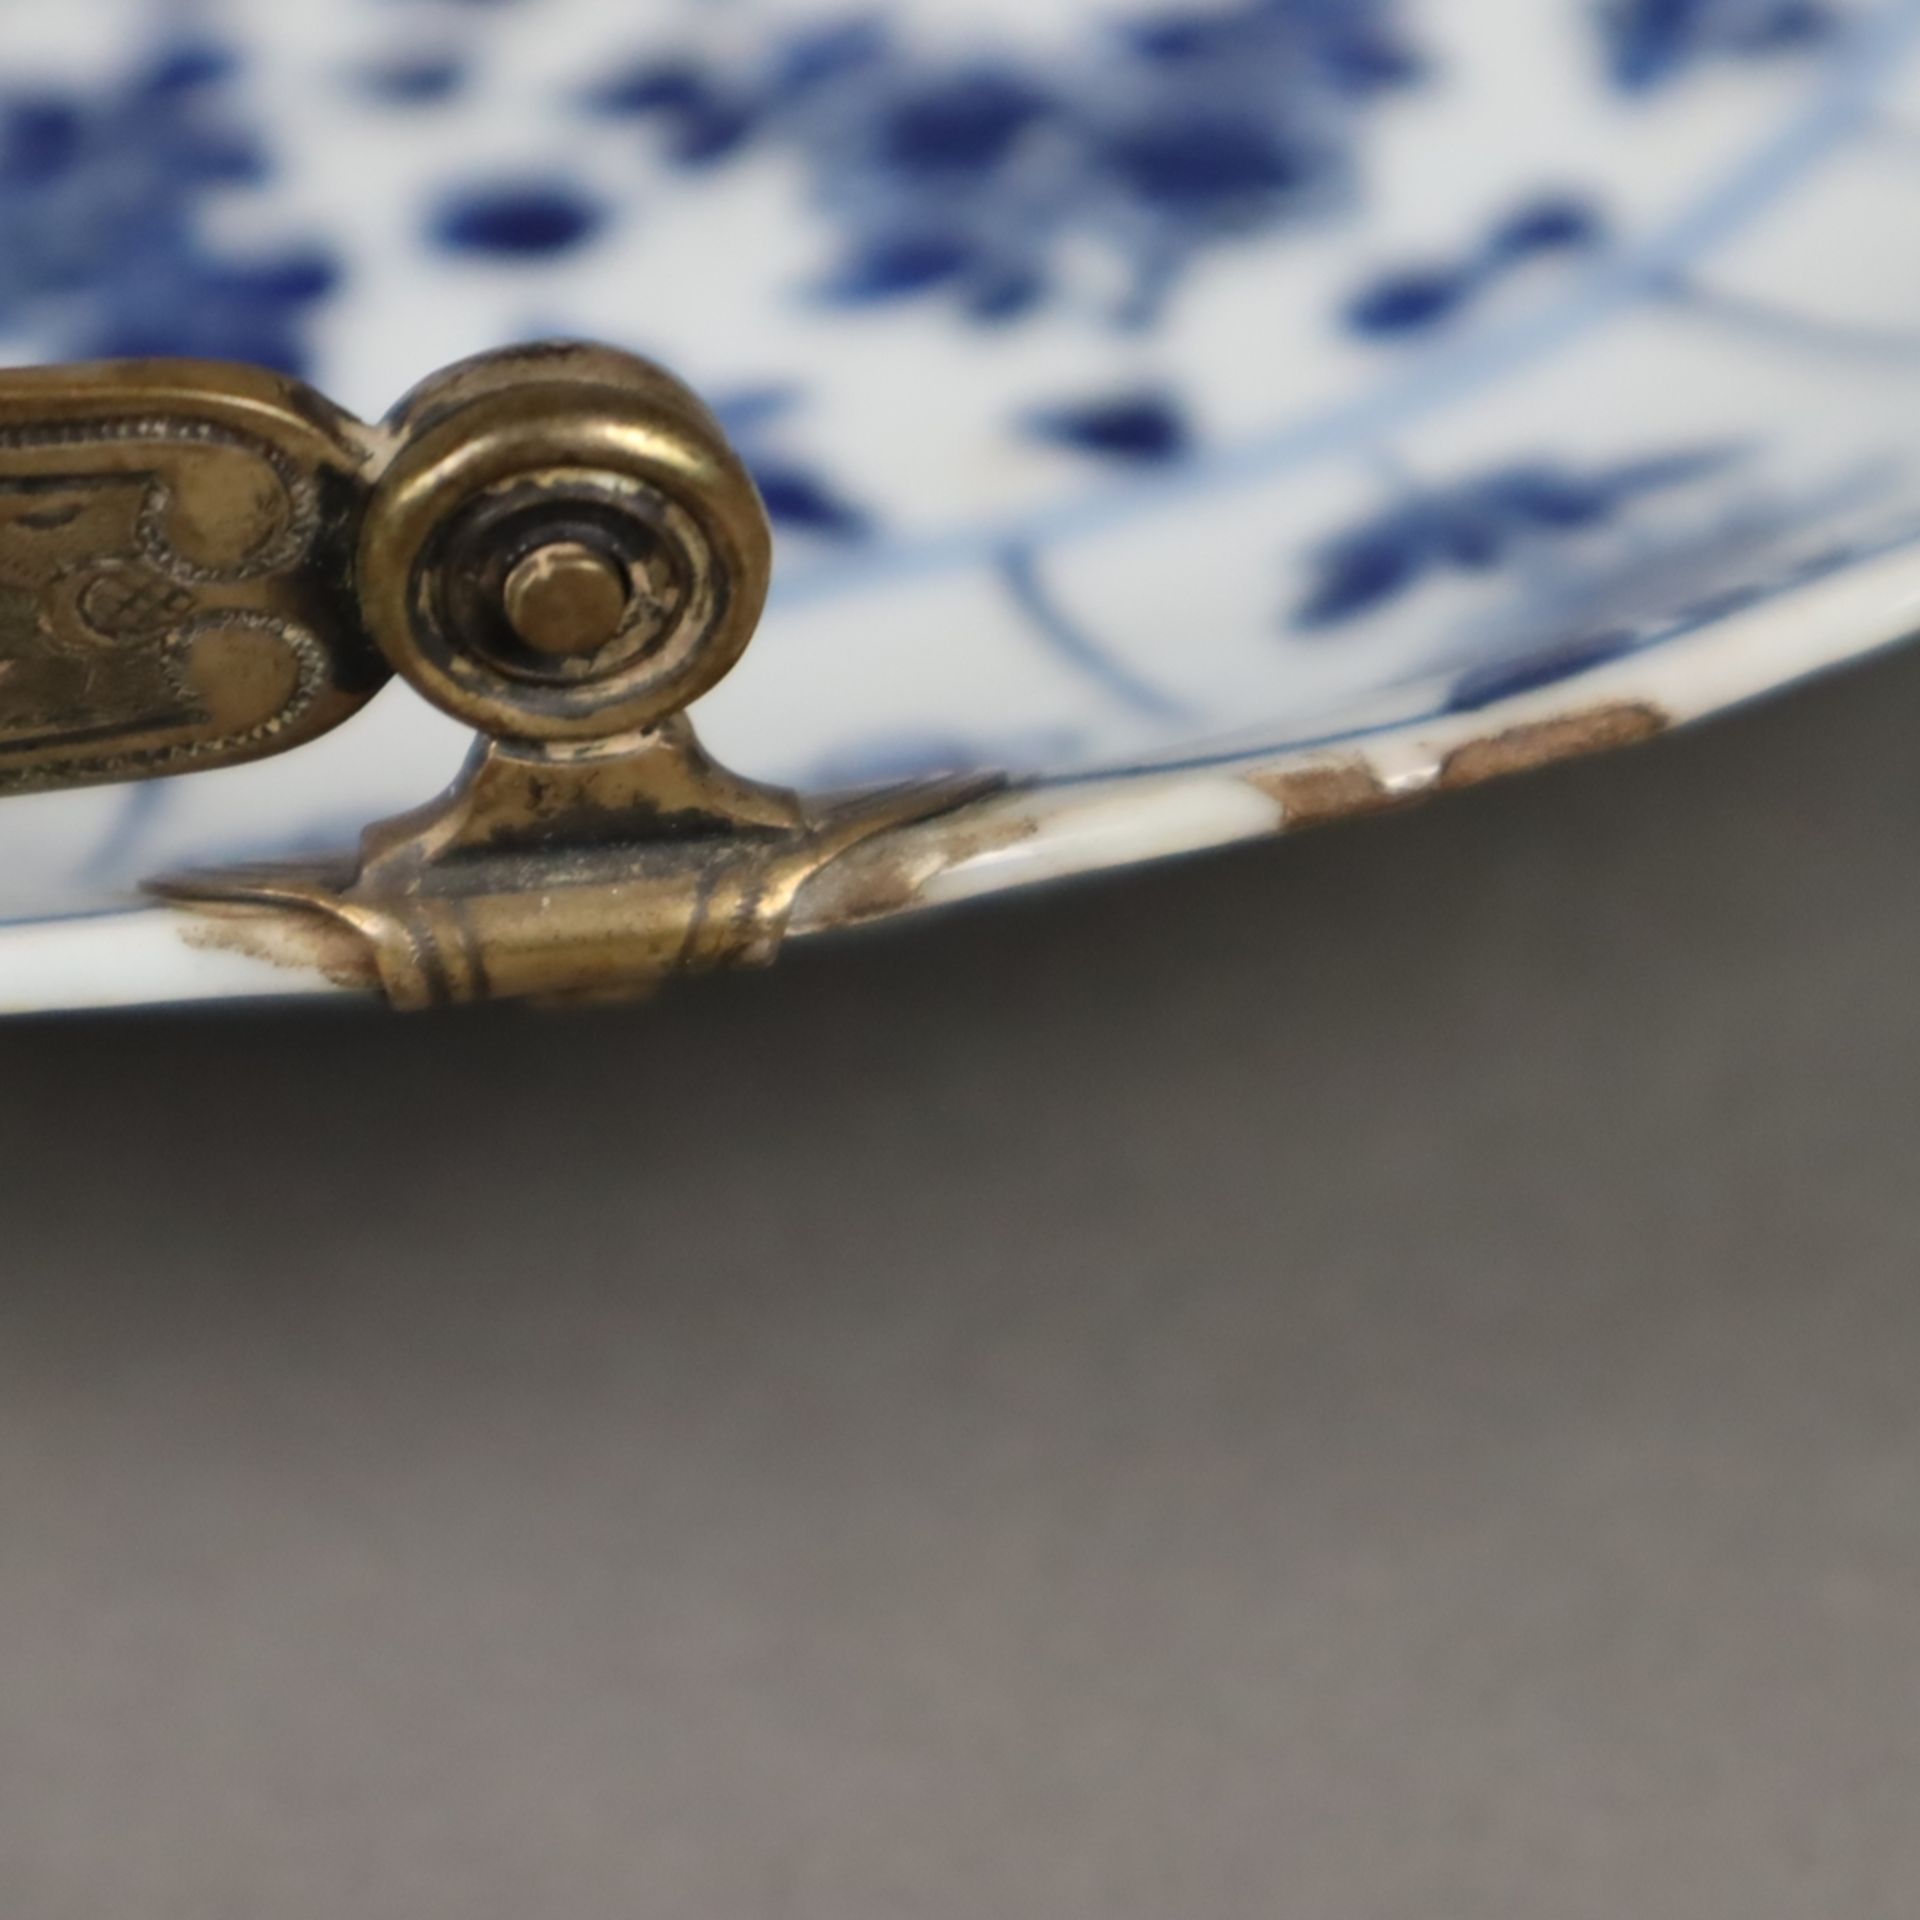 Blau-weißer Teller mit Silbermontur - China, späte Qing-Dynastie, Porzellan, dekoriert in Unterglas - Image 7 of 12